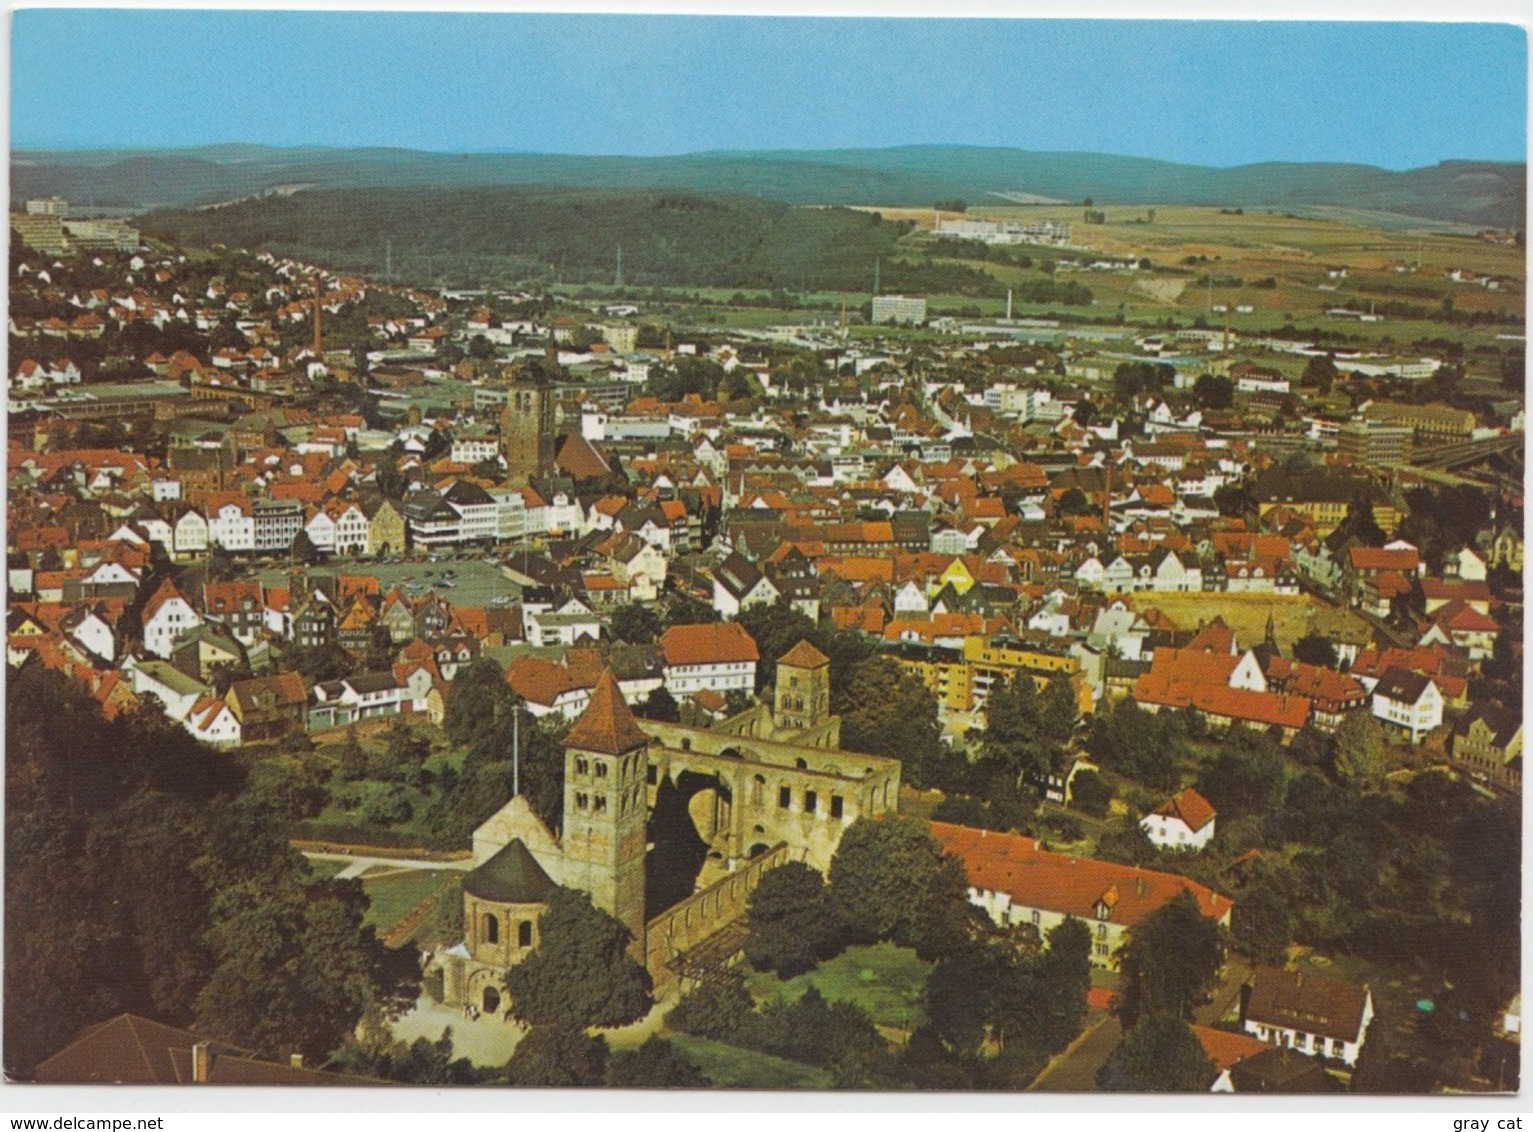 Bad Hersfeld, 1991 Used Postcard [21153] - Bad Hersfeld